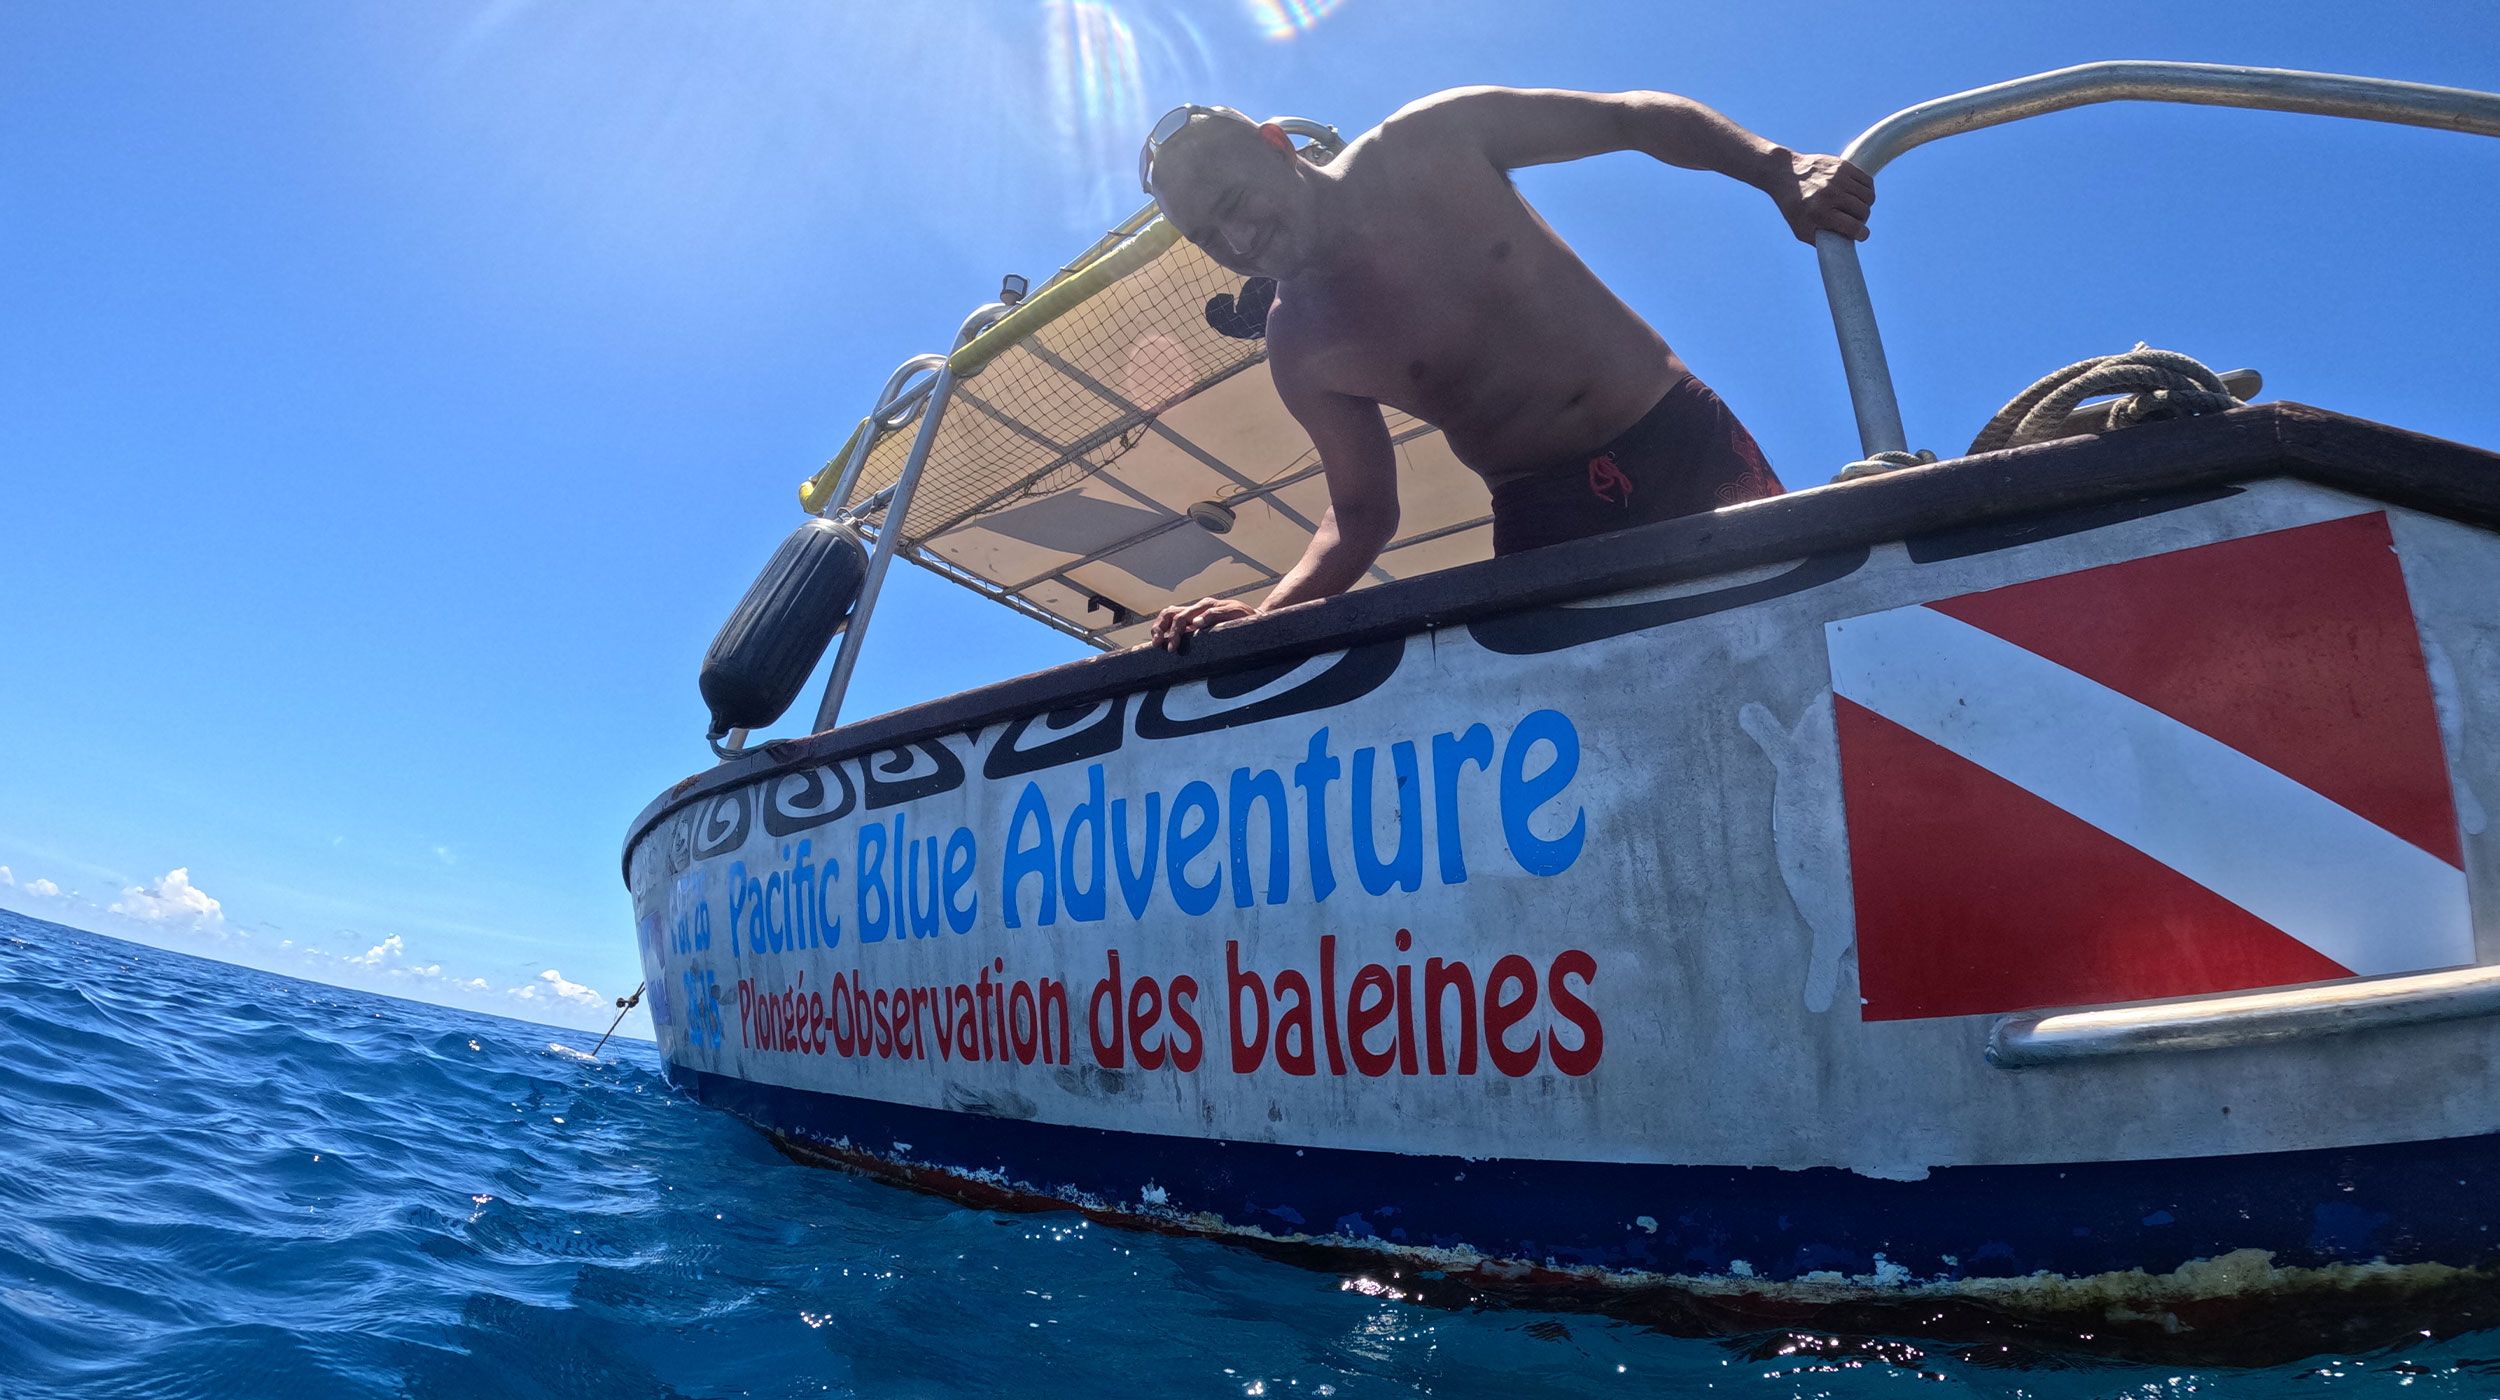 Boat Pacific Blue Adventure